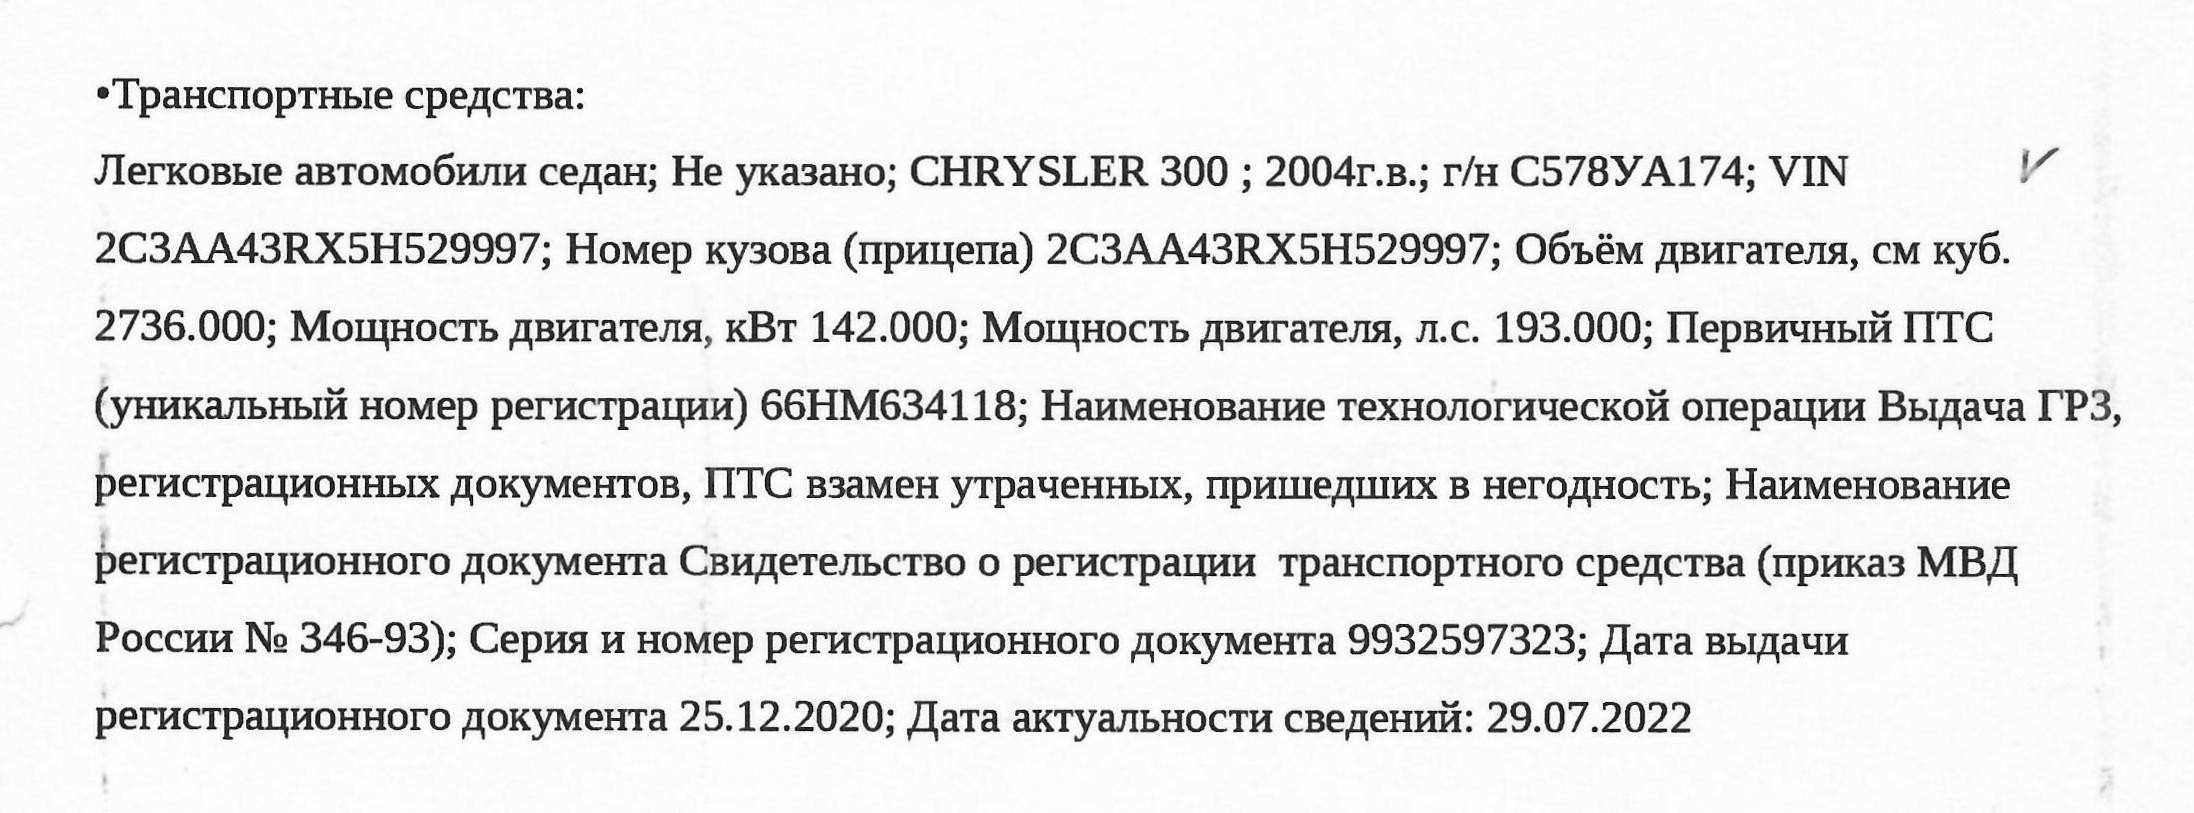 А/м Chrysler 300, 2004 г.в., г/н С 578 УА 174, VIN 2C3AA43RX5H529997 Основание реализации имущества: